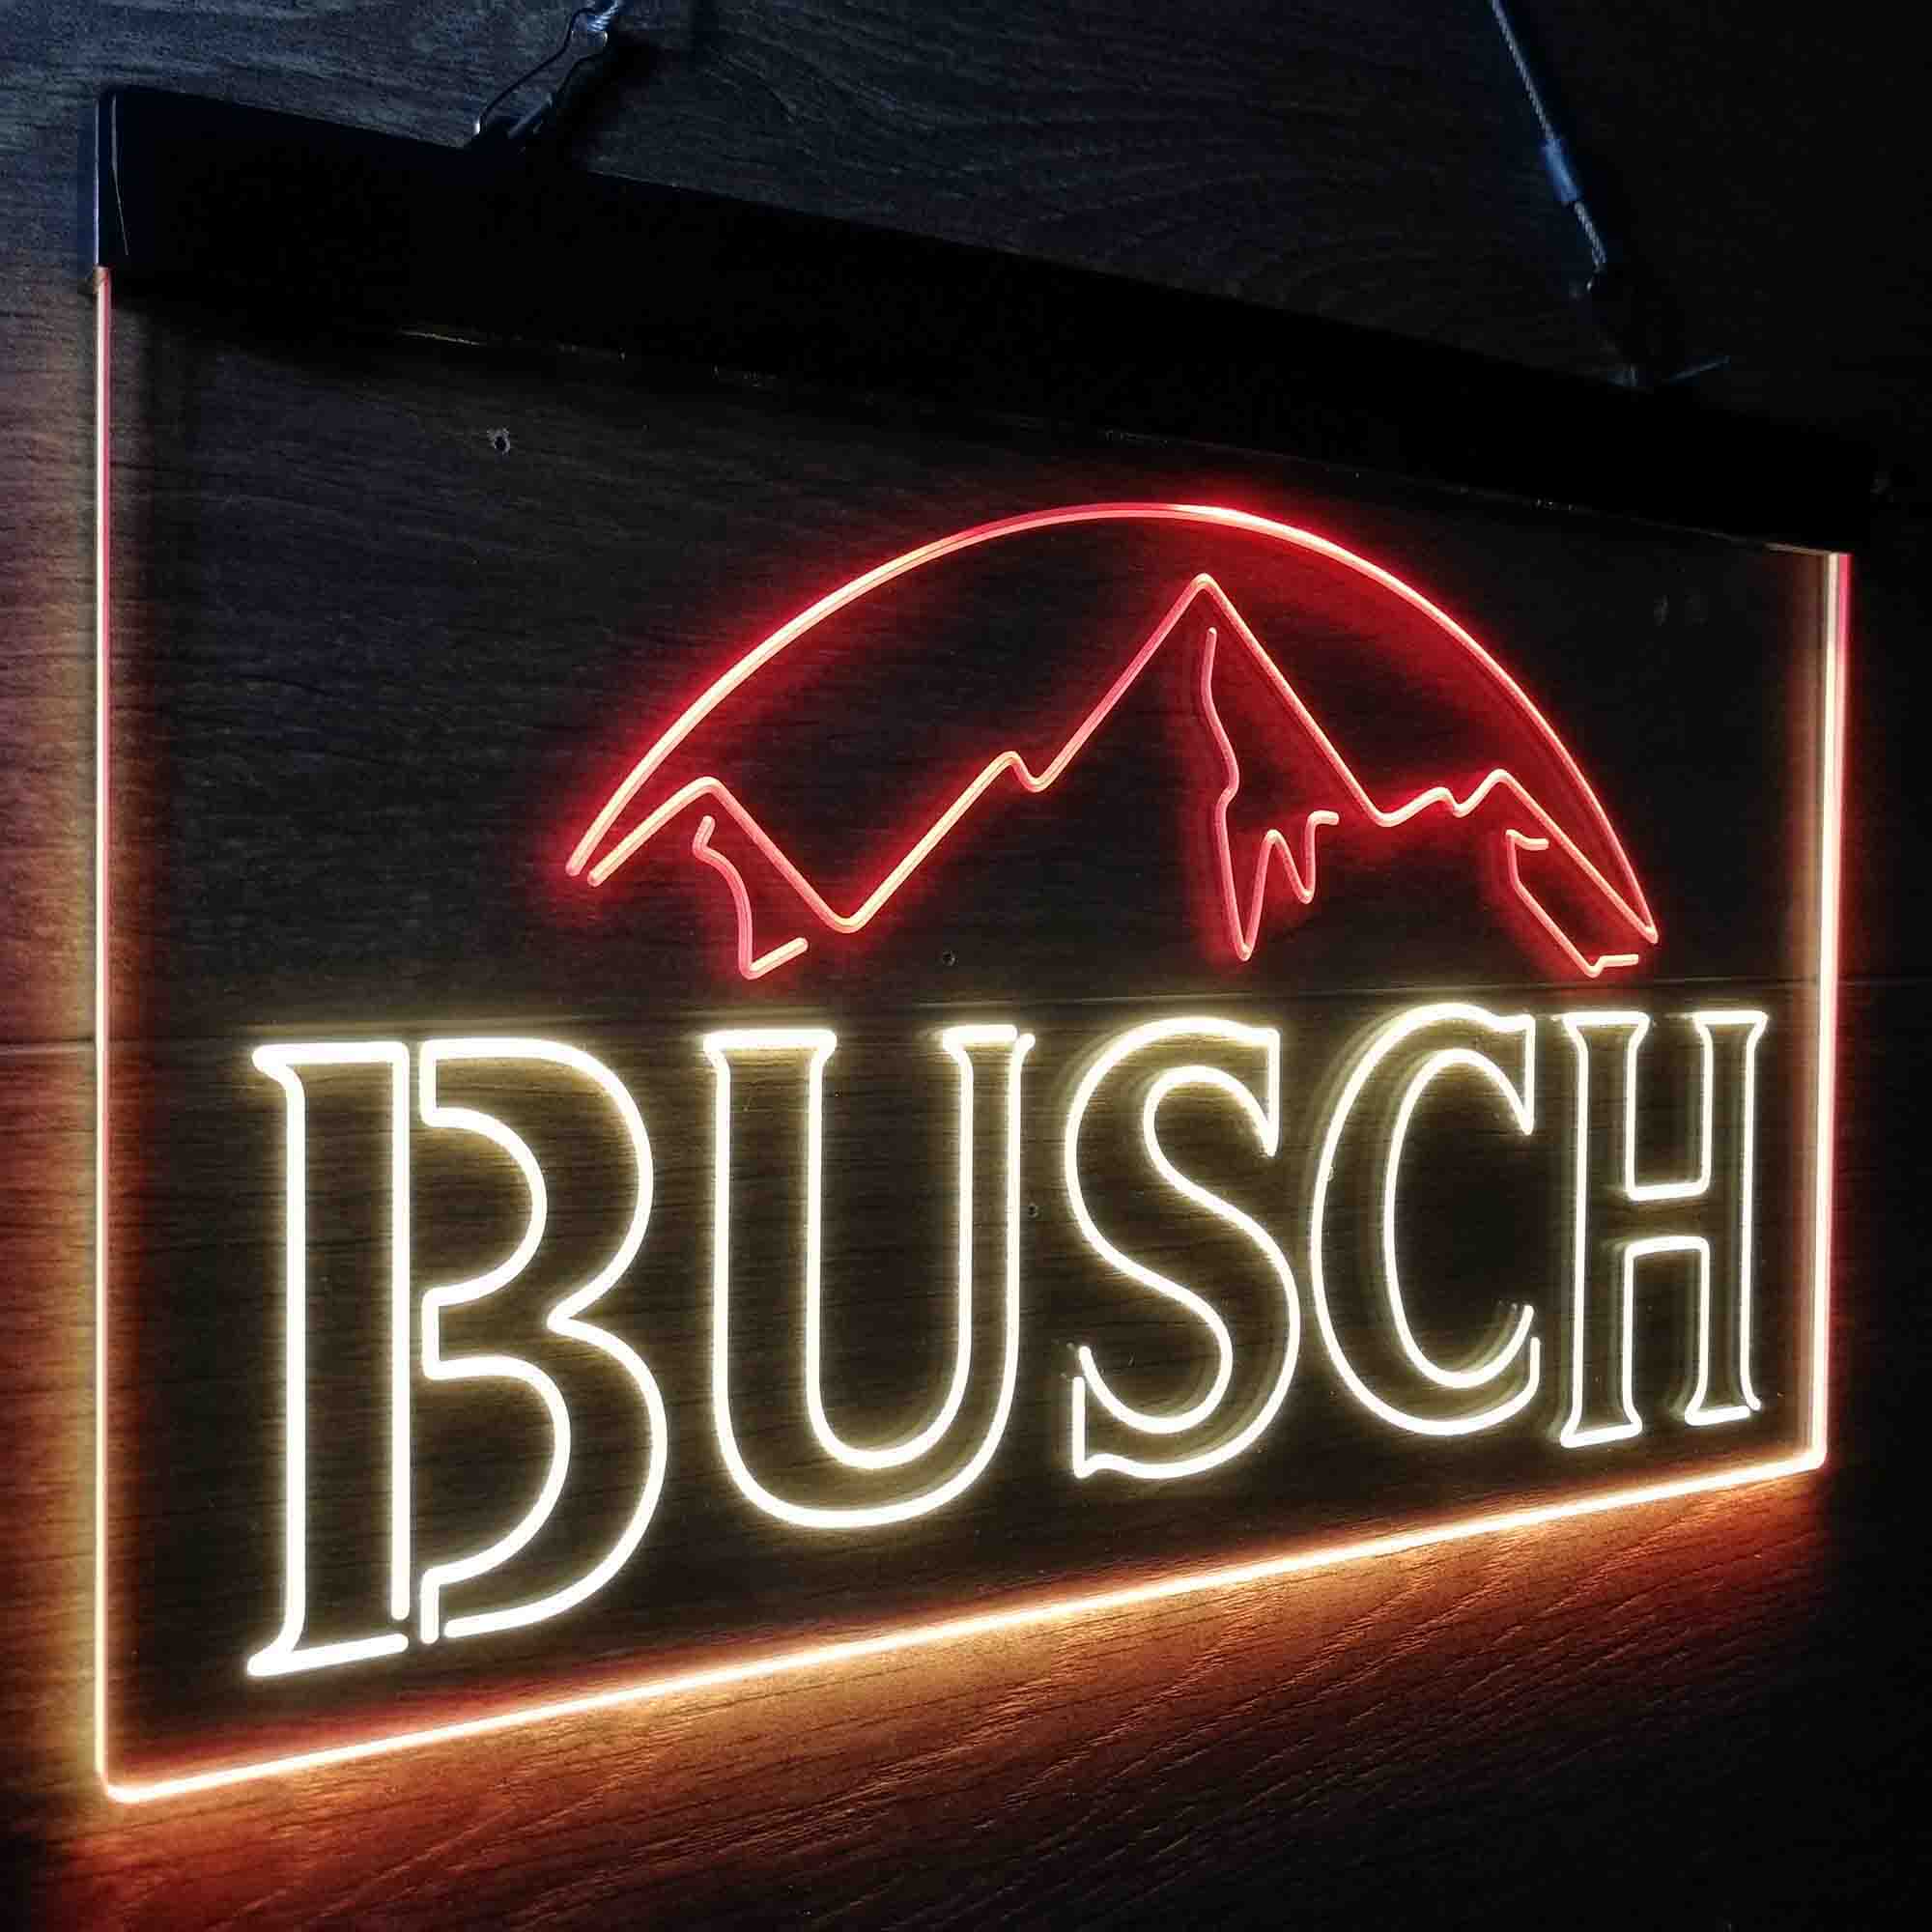 Busch Snow Mountain LED Neon Sign